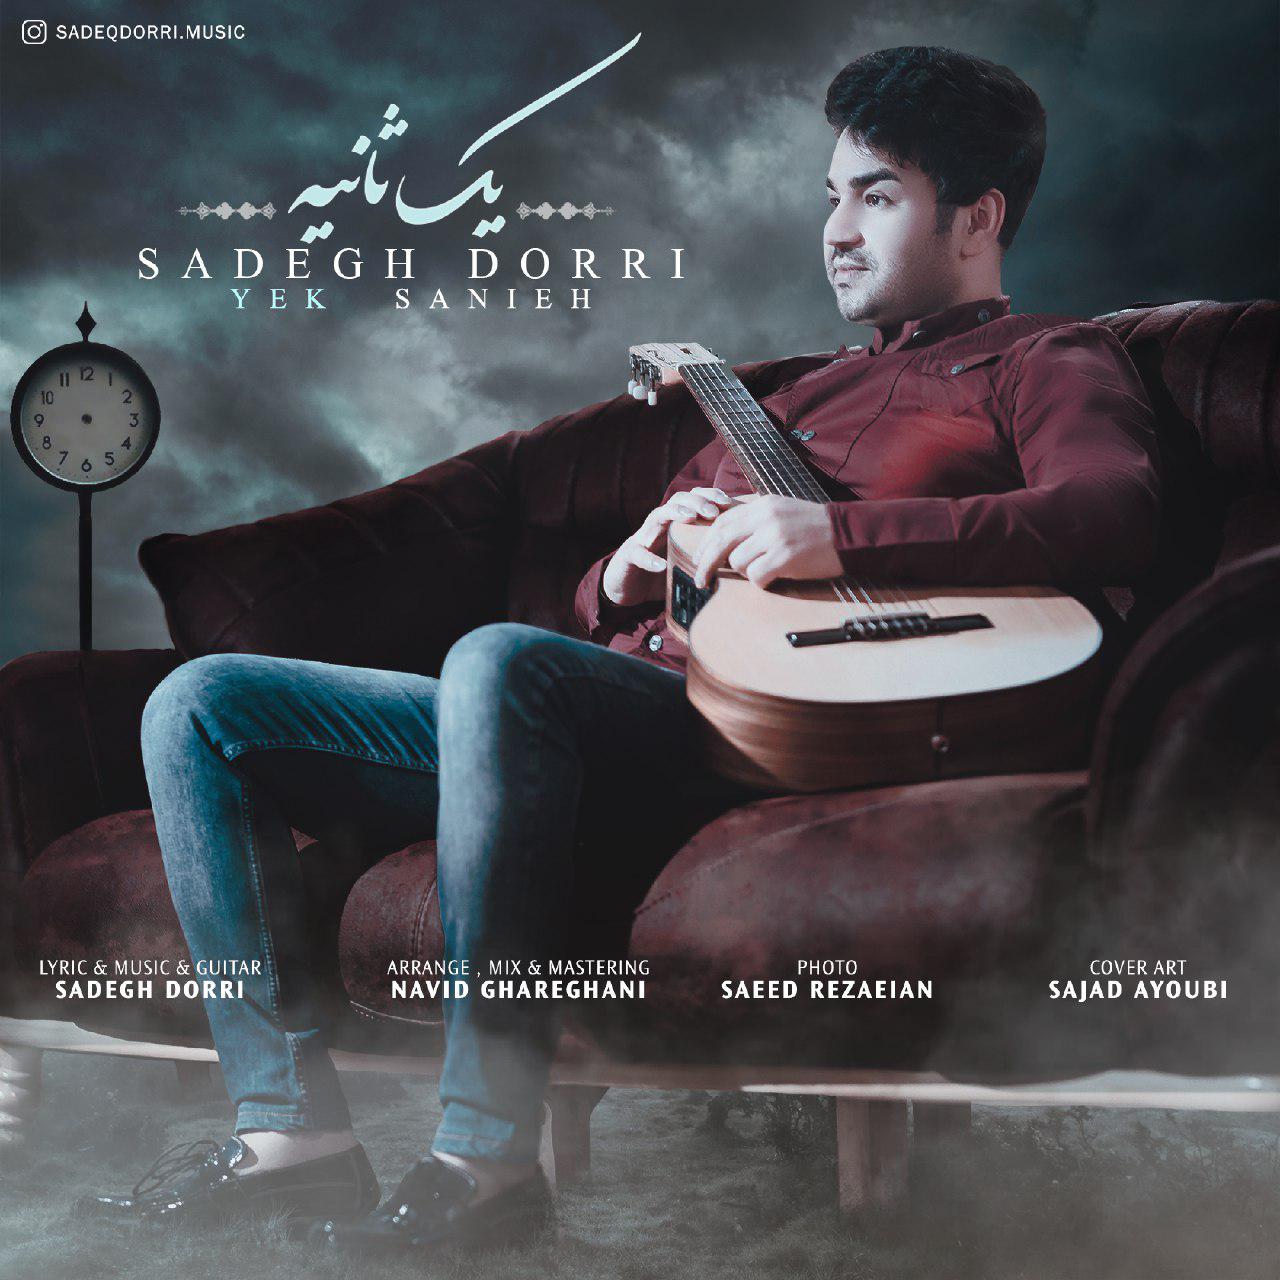  دانلود آهنگ جدید صادق دری - یک ثانیه | Download New Music By Sadegh Dorri - Yek Sanieh